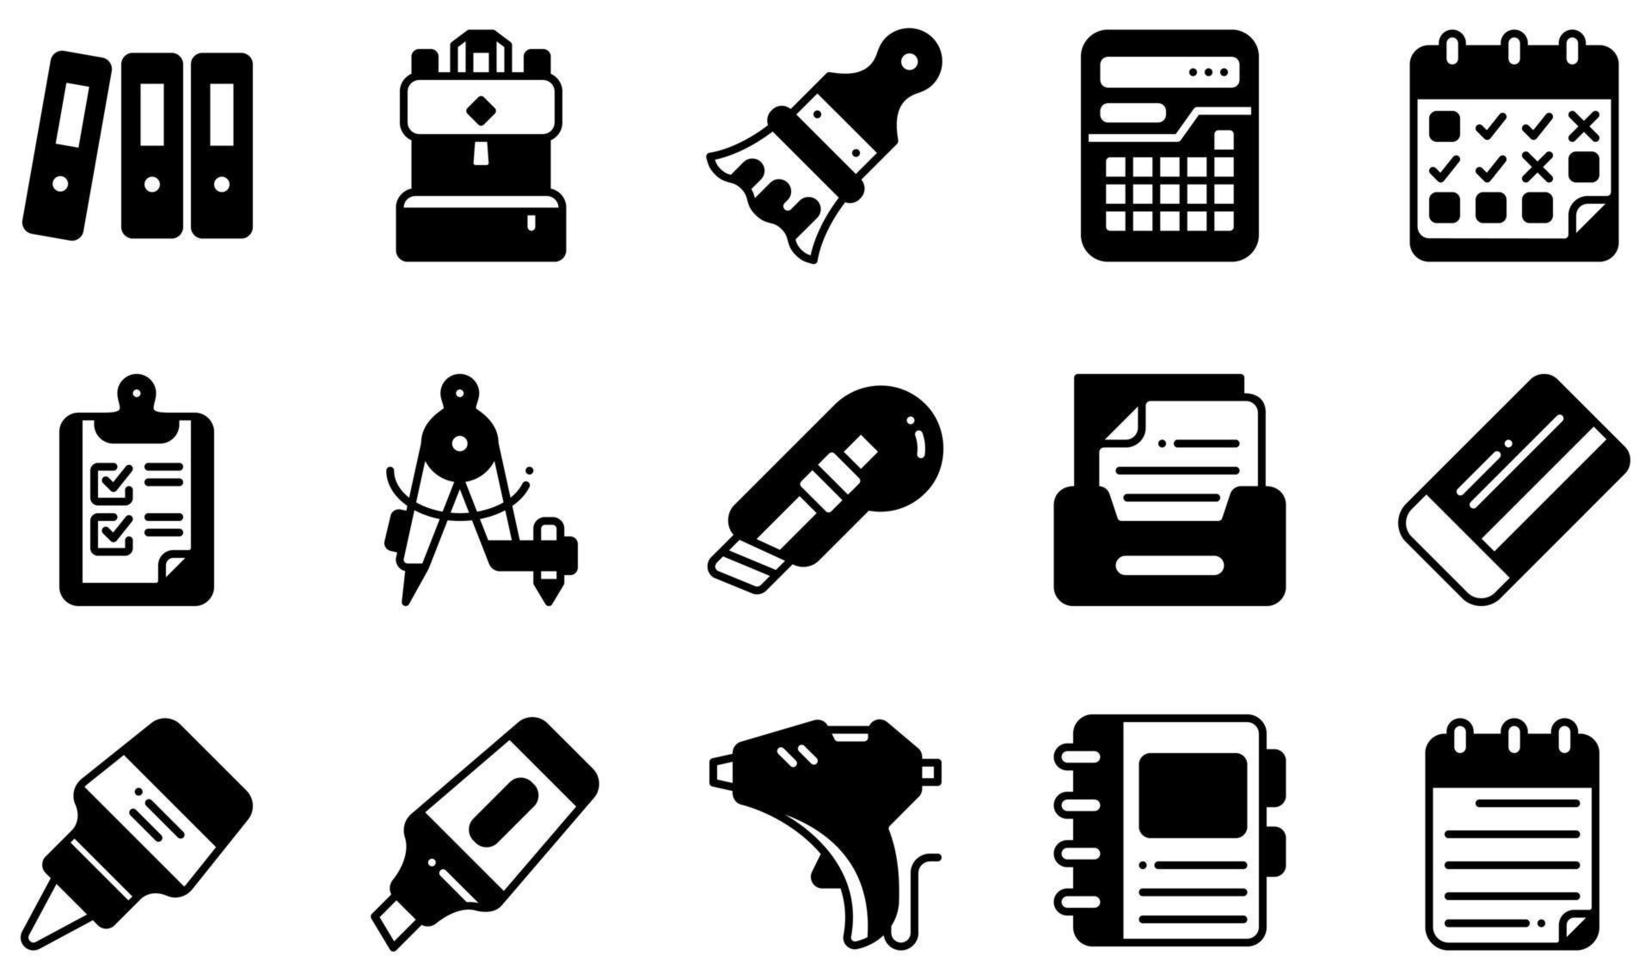 conjunto de ícones vetoriais relacionados a artigos de papelaria. contém ícones como arquivos, mochila, calculadora, prancheta, cortador, cola e muito mais. vetor